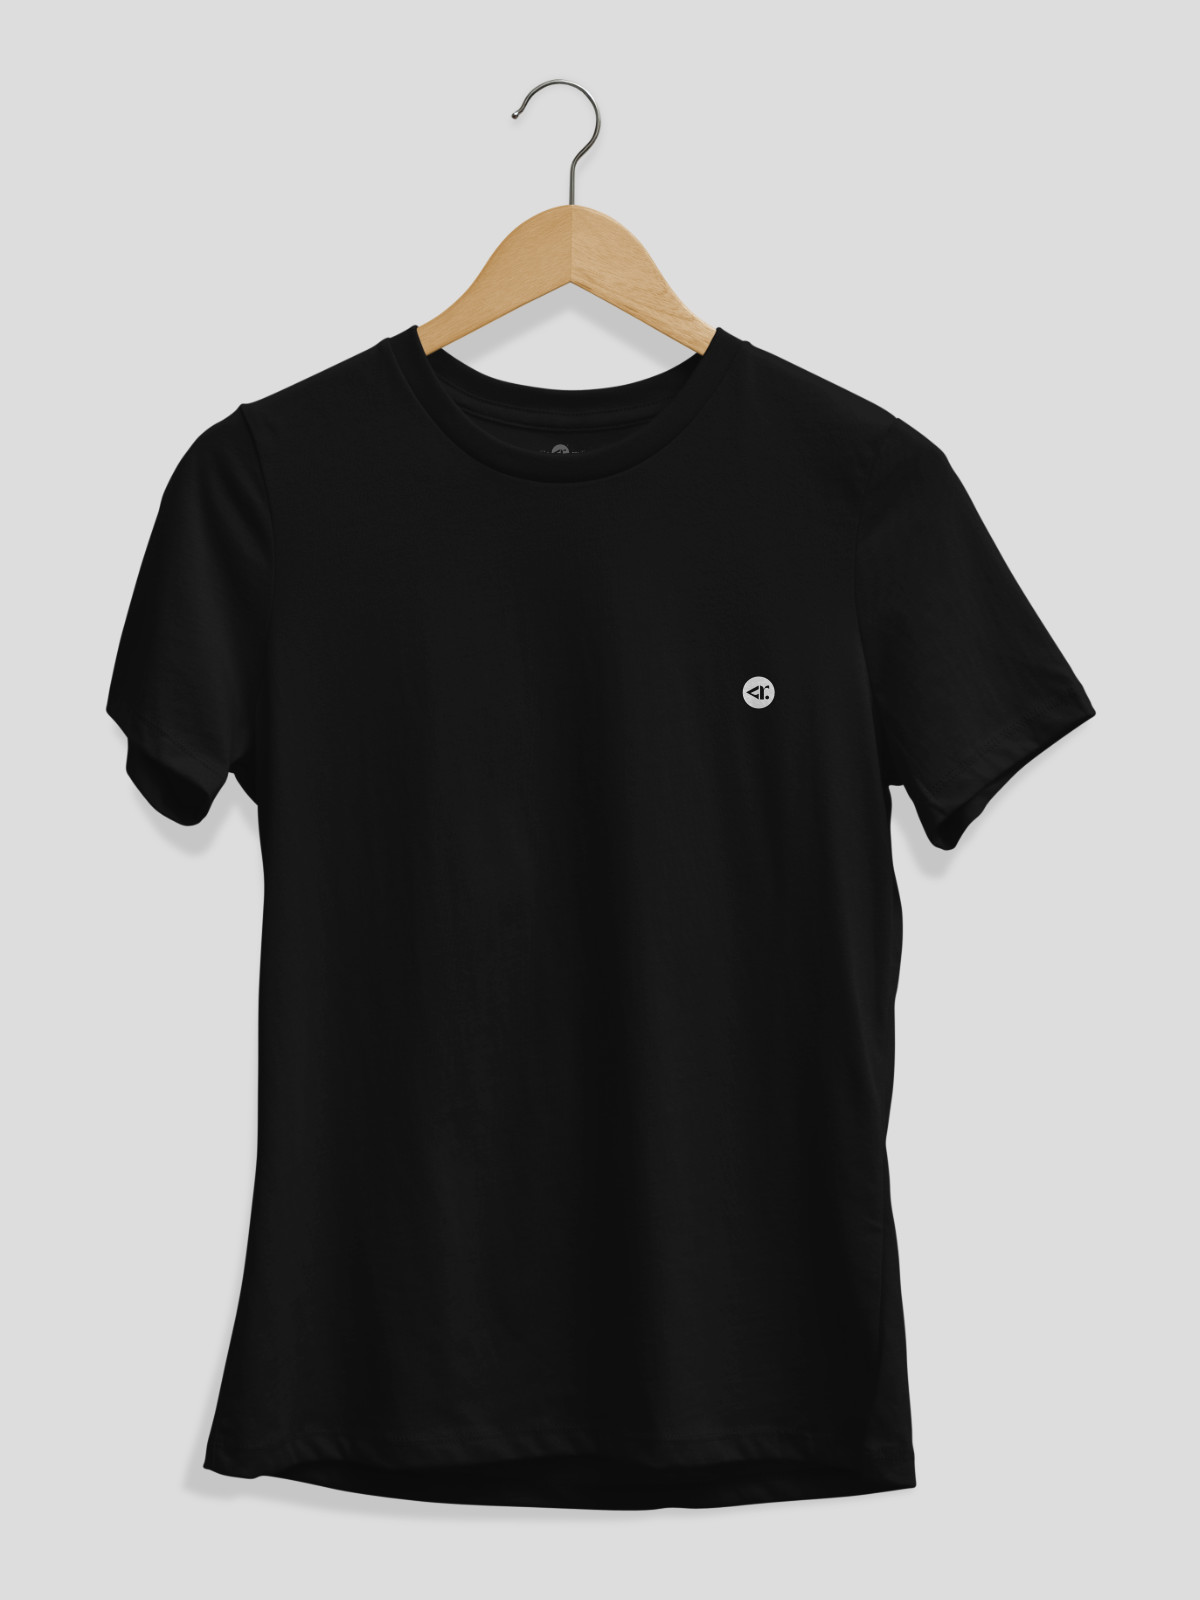 Original black t-shirt